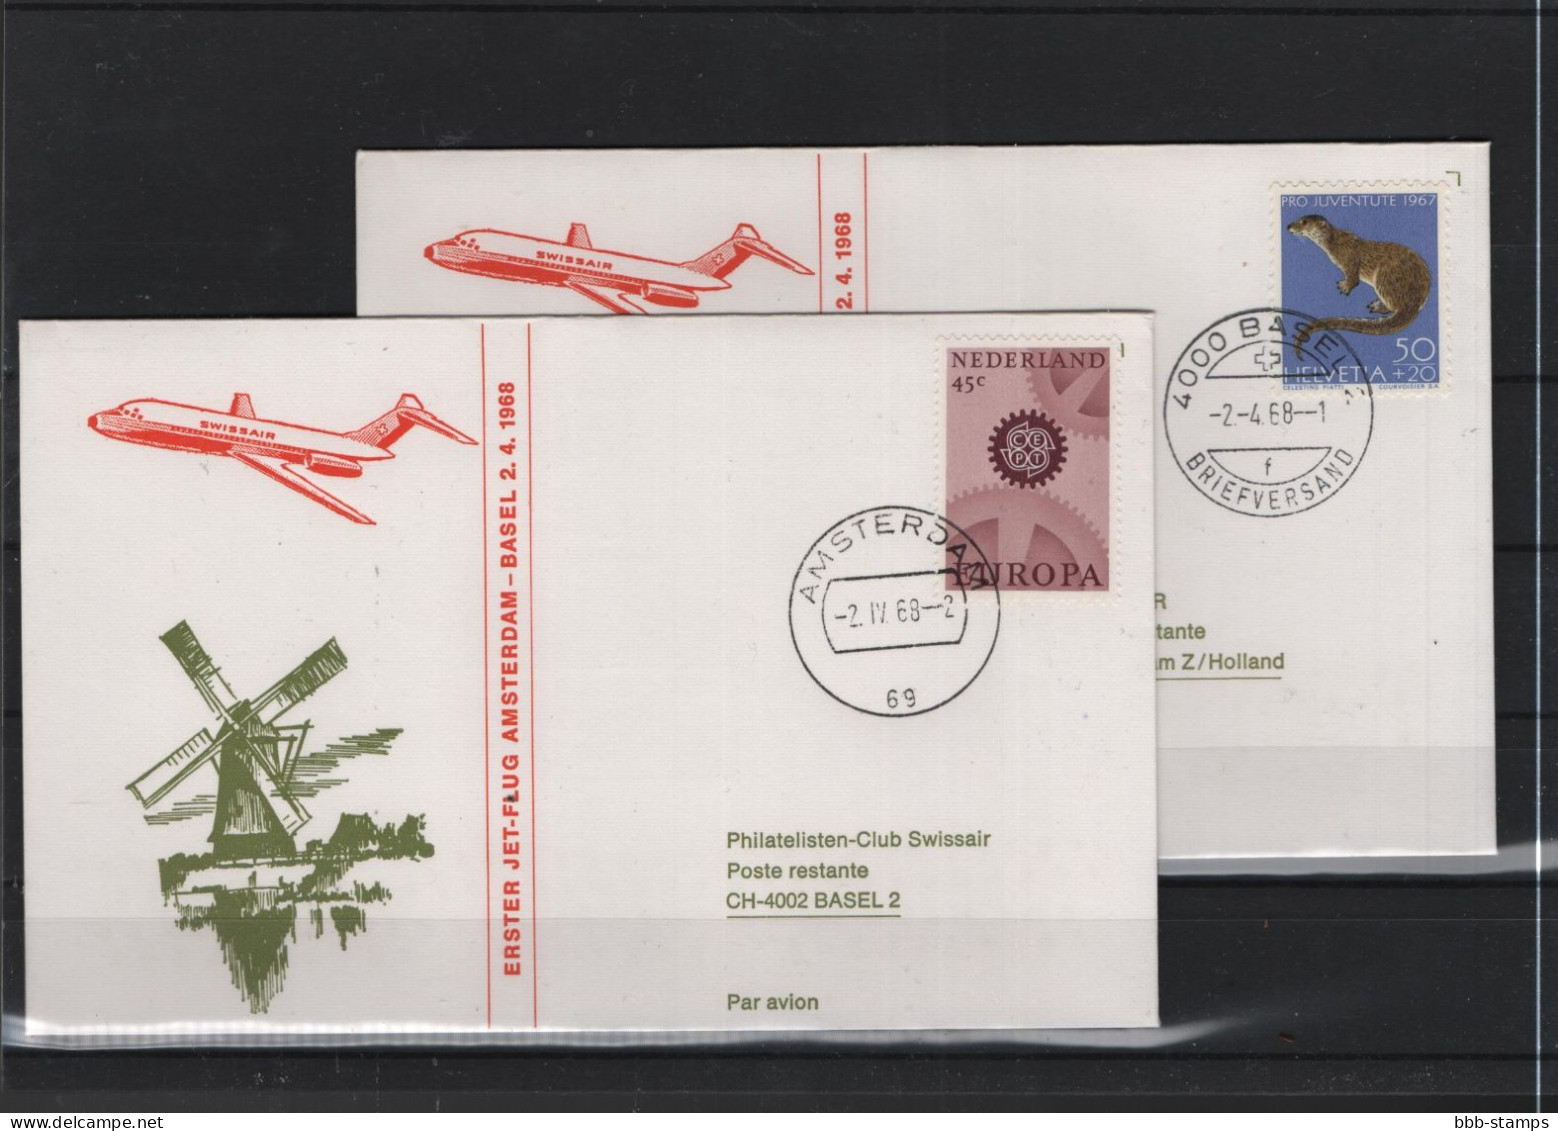 Schweiz Air Mail Swissair  FFC  2.4.1968 Basel - Amsterdam VV - Erst- U. Sonderflugbriefe